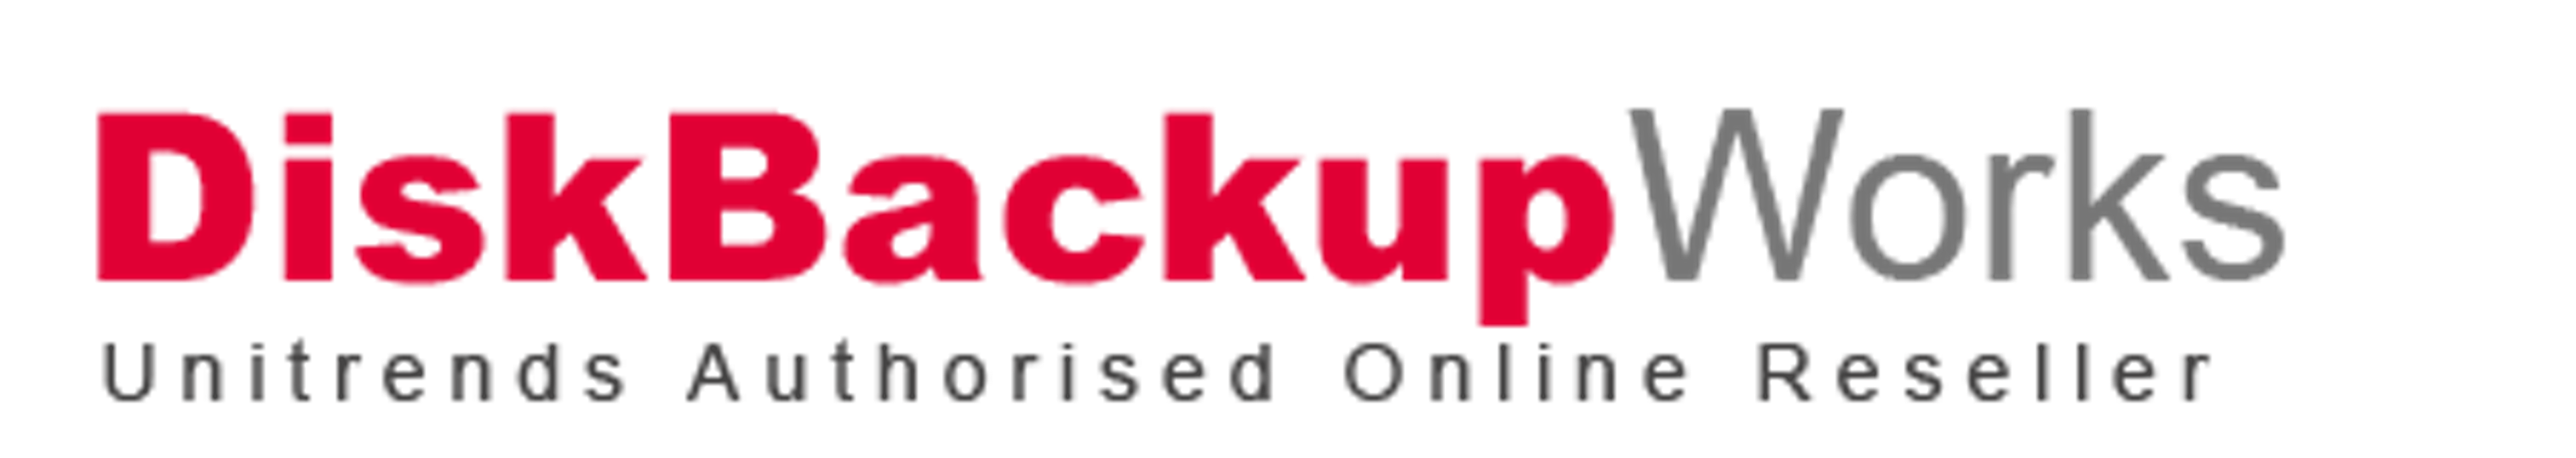 DiskBackupWorks co uk